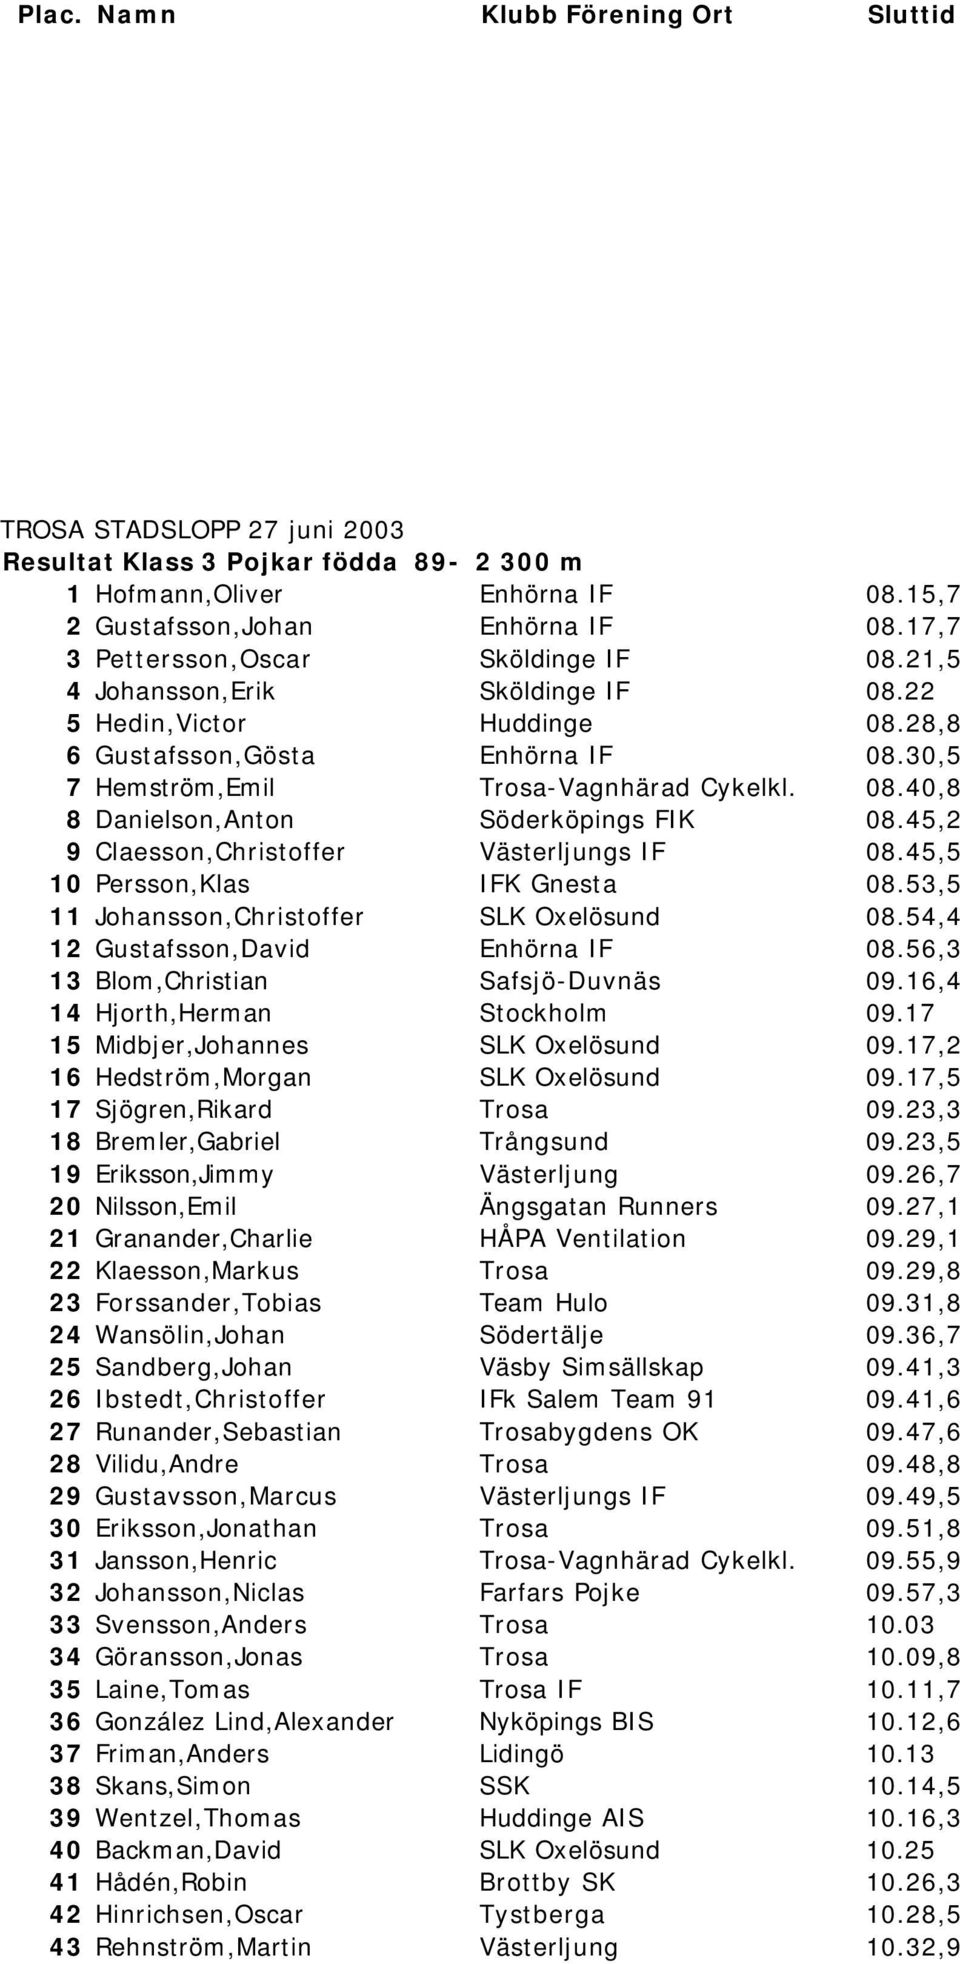 45,2 9 Claesson,Christoffer Västerljungs IF 08.45,5 10 Persson,Klas IFK Gnesta 08.53,5 11 Johansson,Christoffer SLK Oxelösund 08.54,4 12 Gustafsson,David Enhörna IF 08.